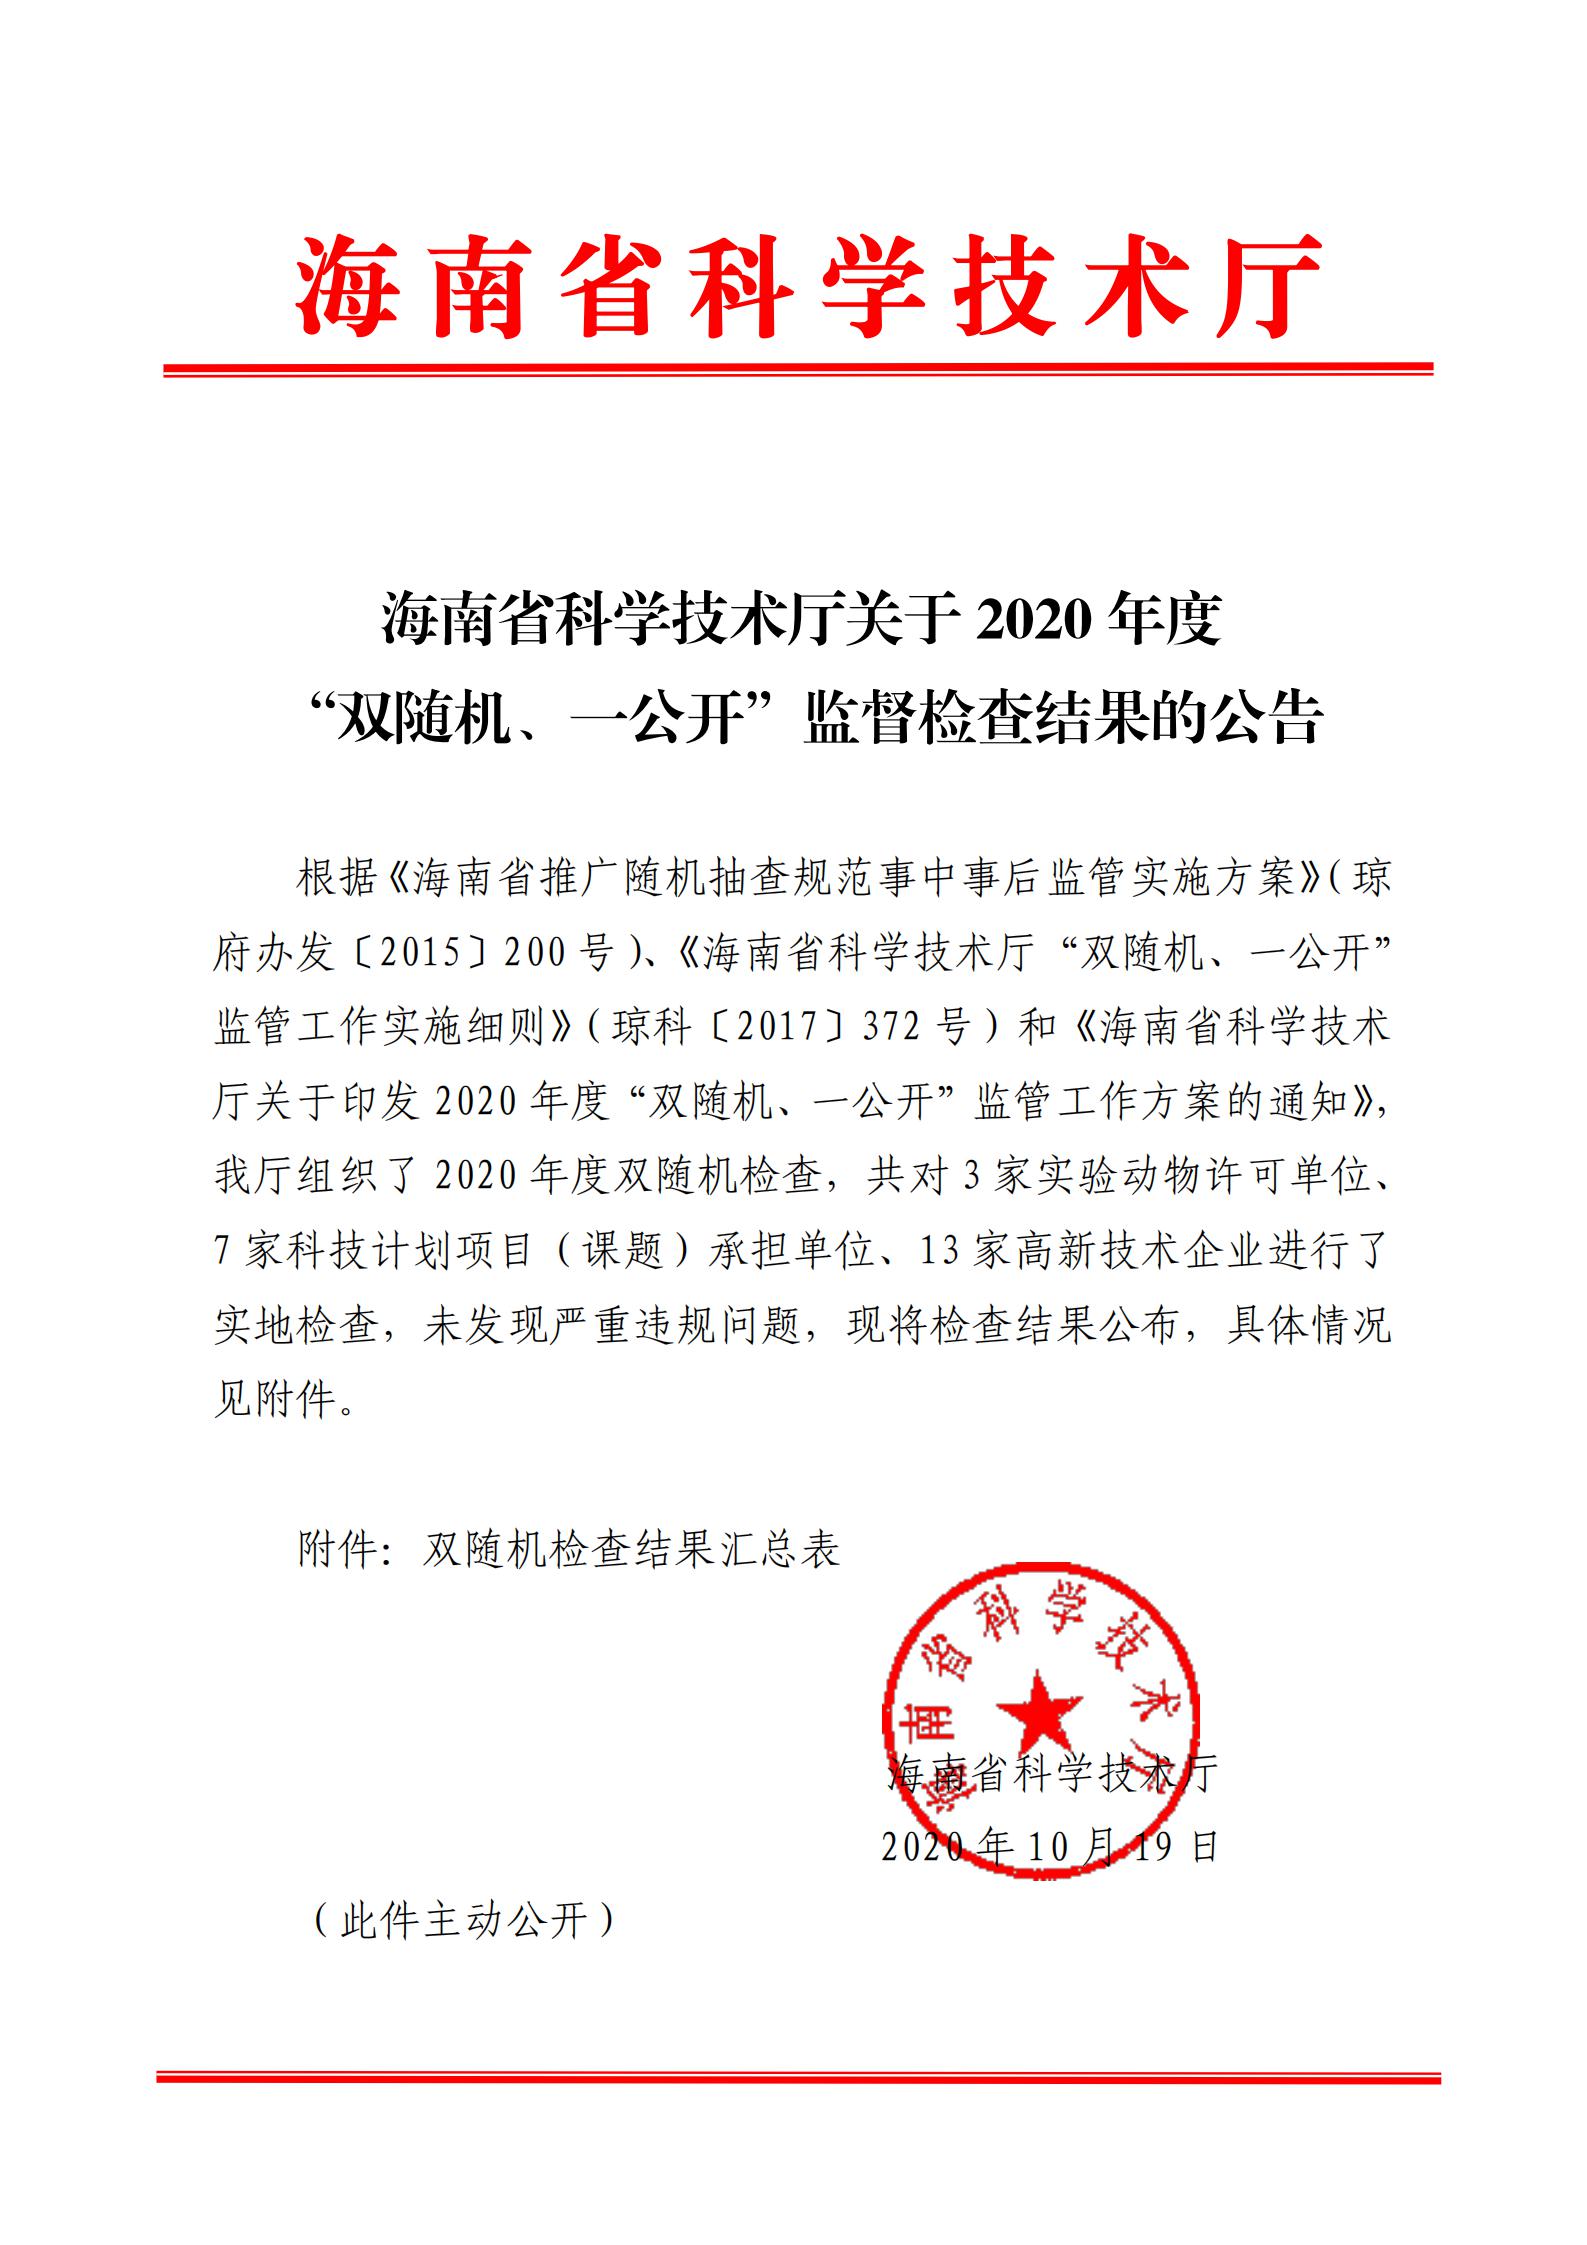 海南省科学技术厅关于2020年度“双随机、一公开”监督检查结果的公告_00.jpg